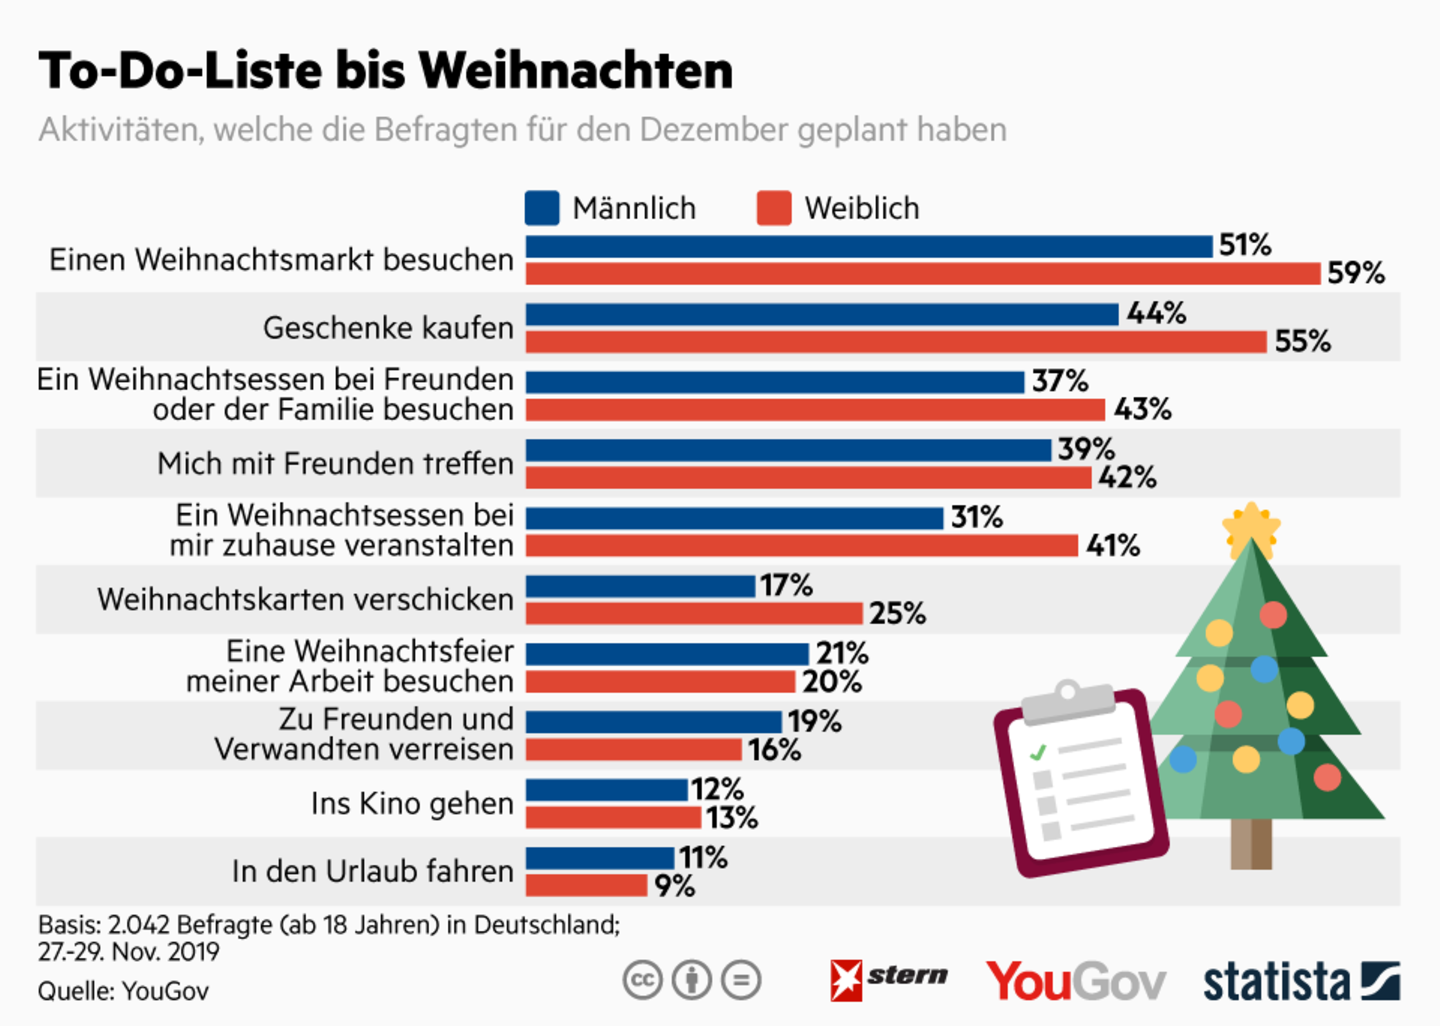 Beliebteste Aktivitäten: Was bis Weihnachten auf den To-Do-Listen der Deutschen steht